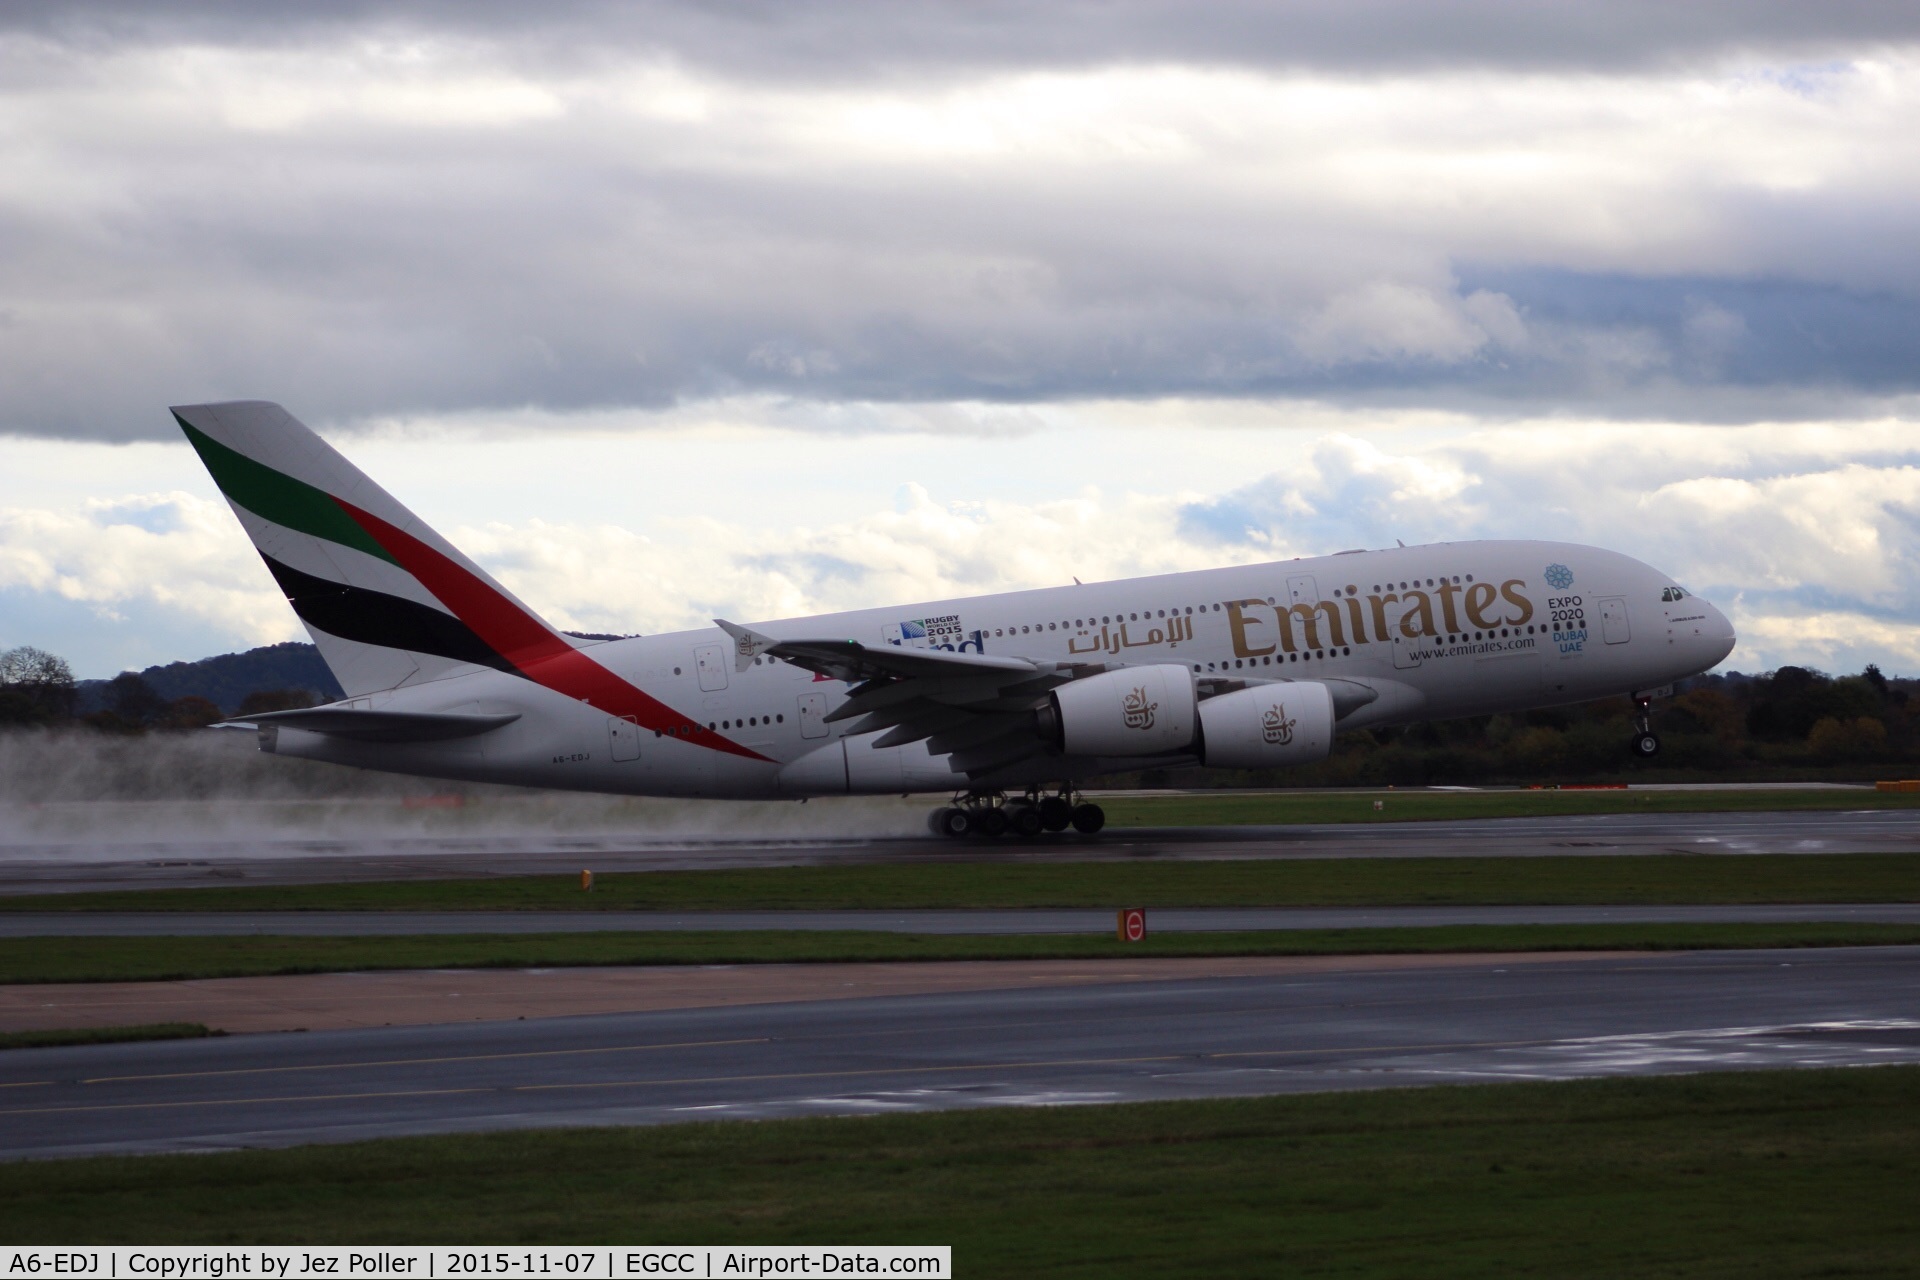 A6-EDJ, 2006 Airbus A380-861 C/N 009, rotation off runway 23r, bound for Dubai,